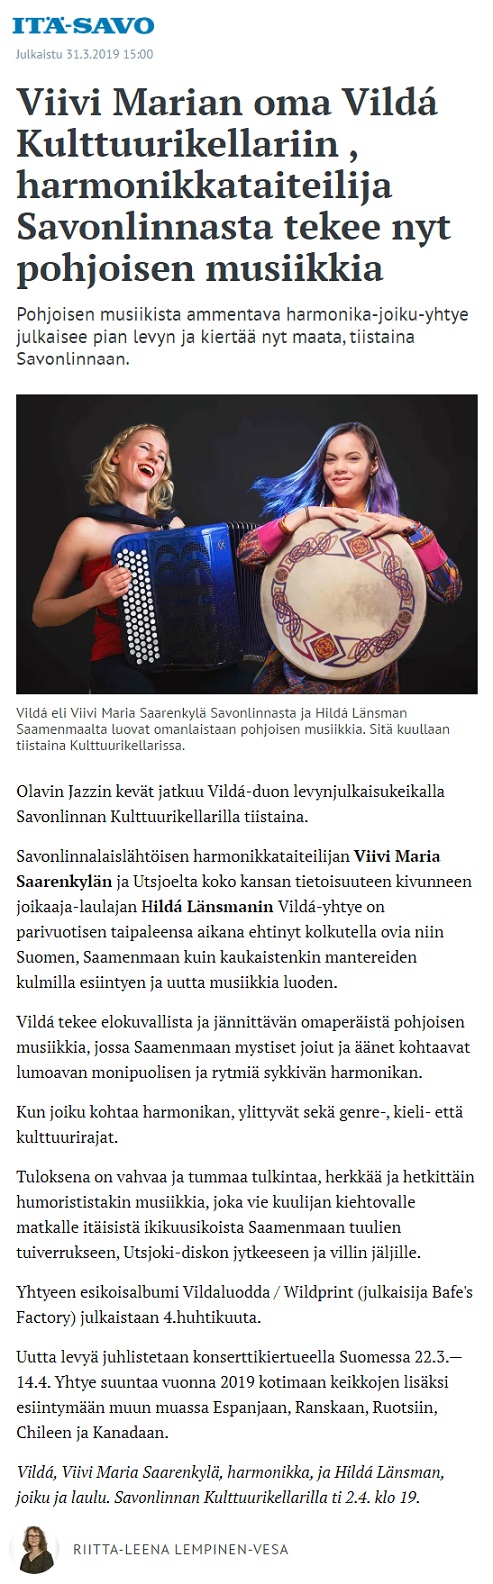 Itä-Savo (Finland), 31.3.2019